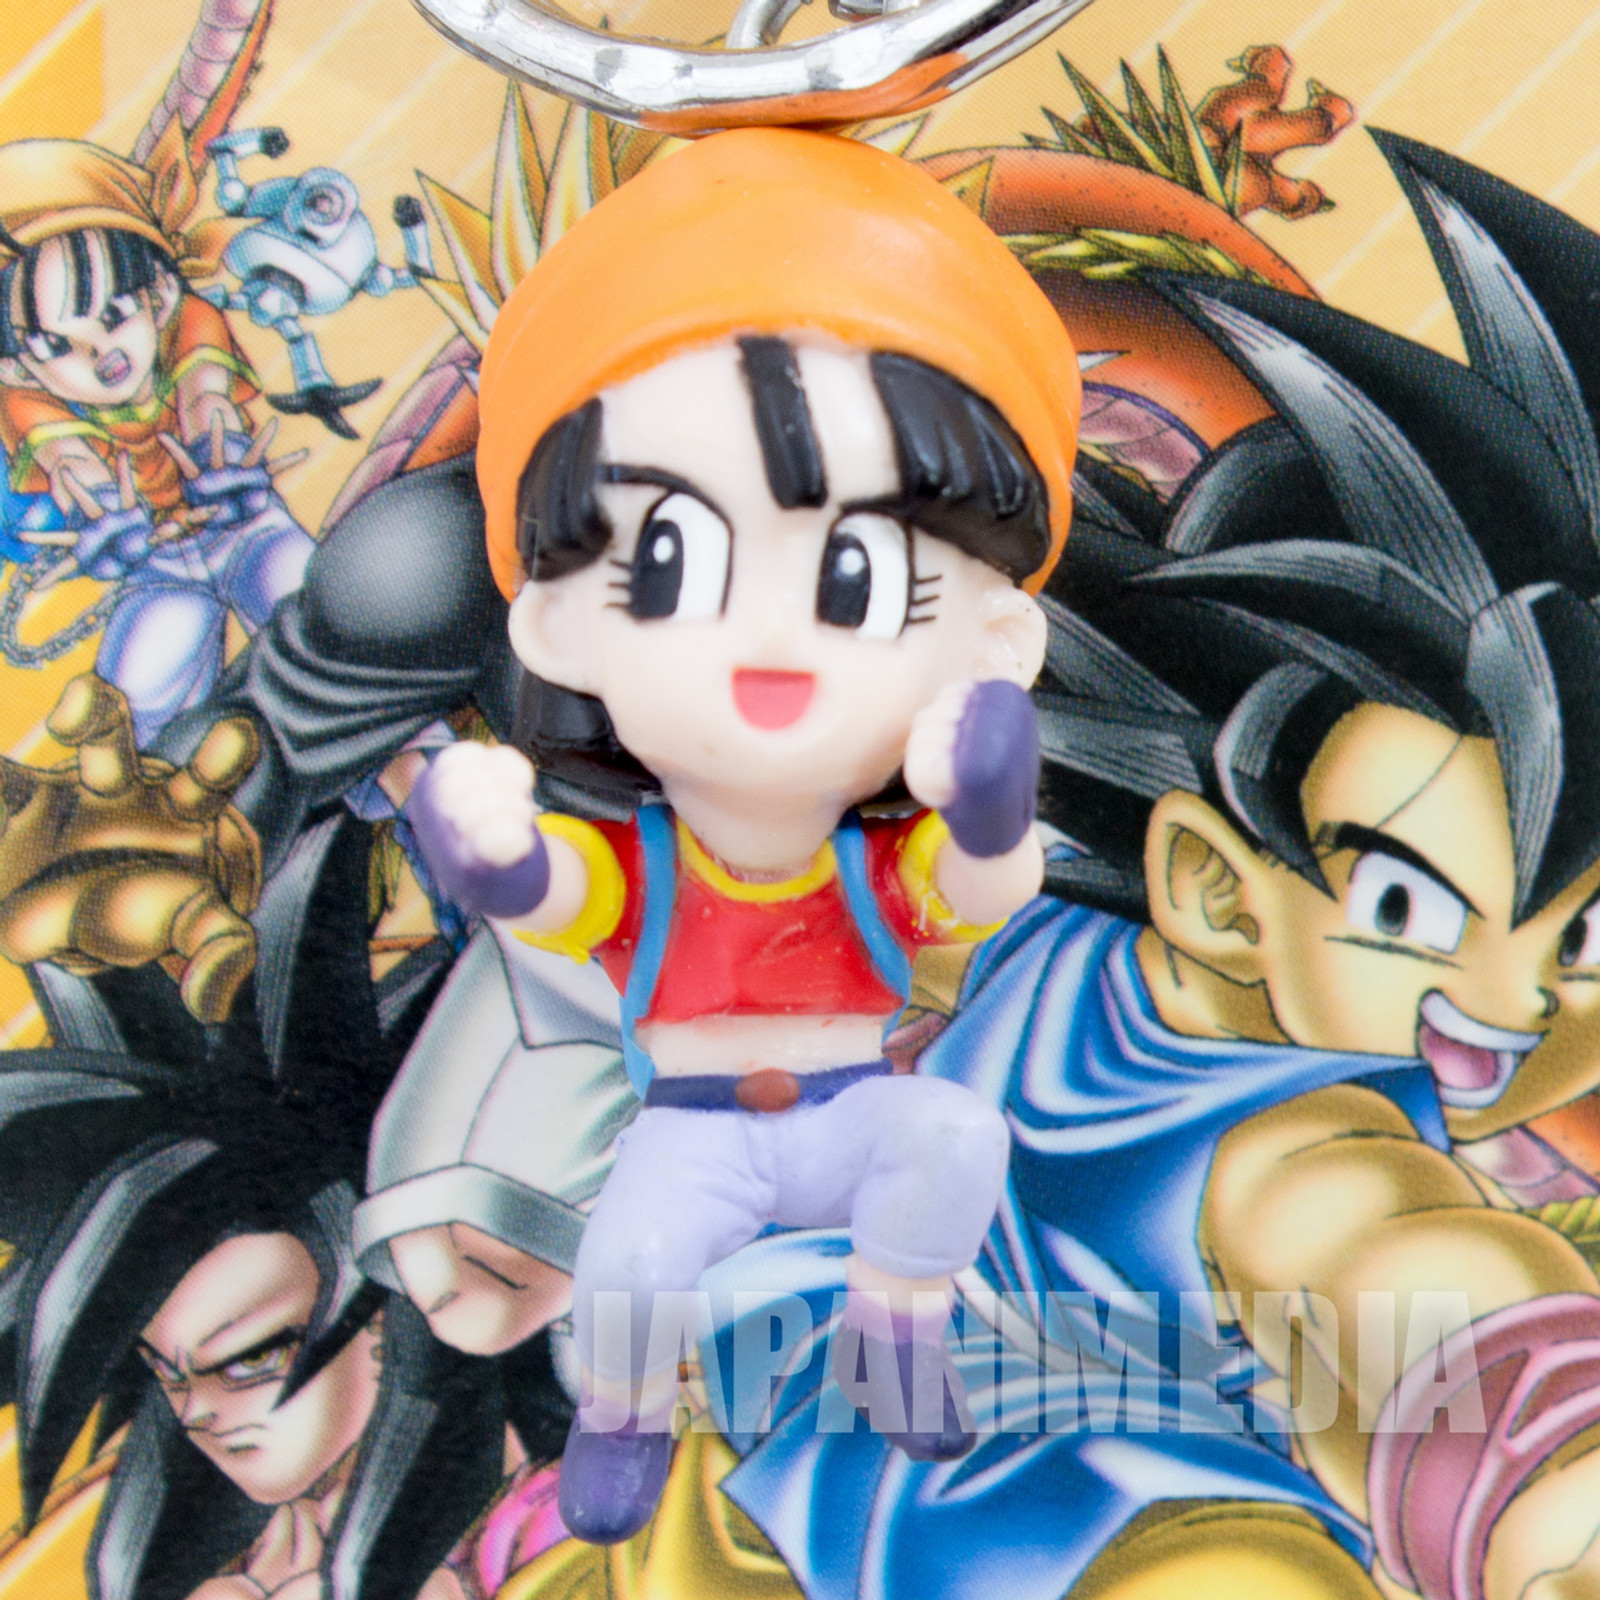 Dragon Ball Z GT Pan Figure Key Chain Banpresto JAPAN ANIME MANGA